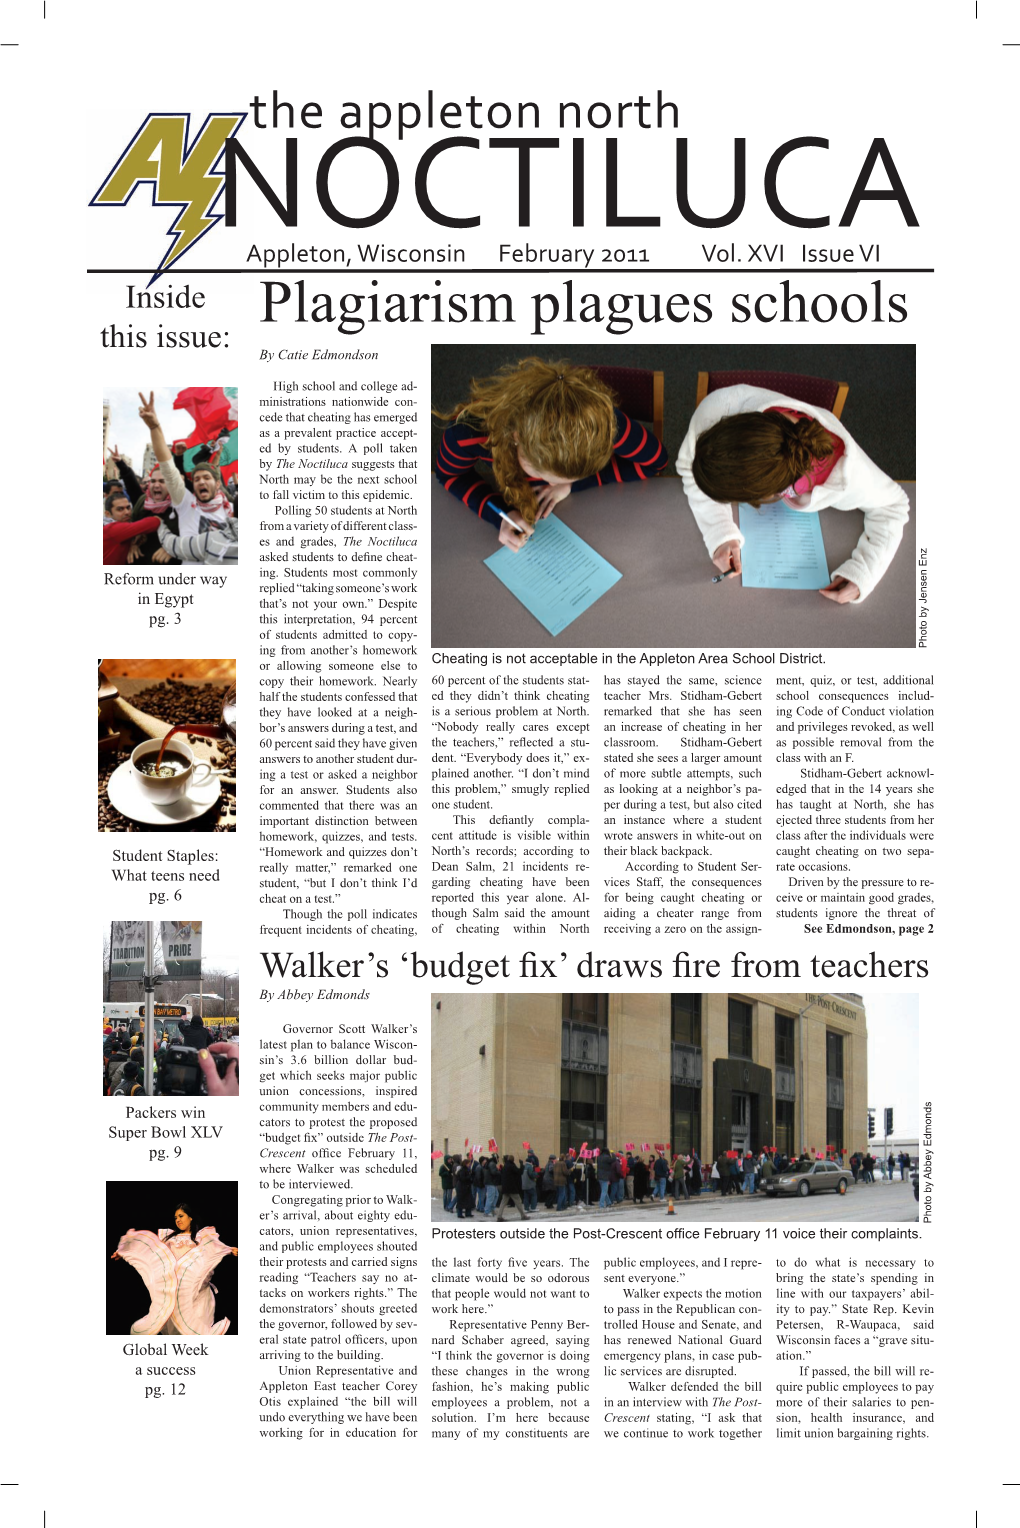 Plagiarism Plagues Schools This Issue: by Catie Edmondson